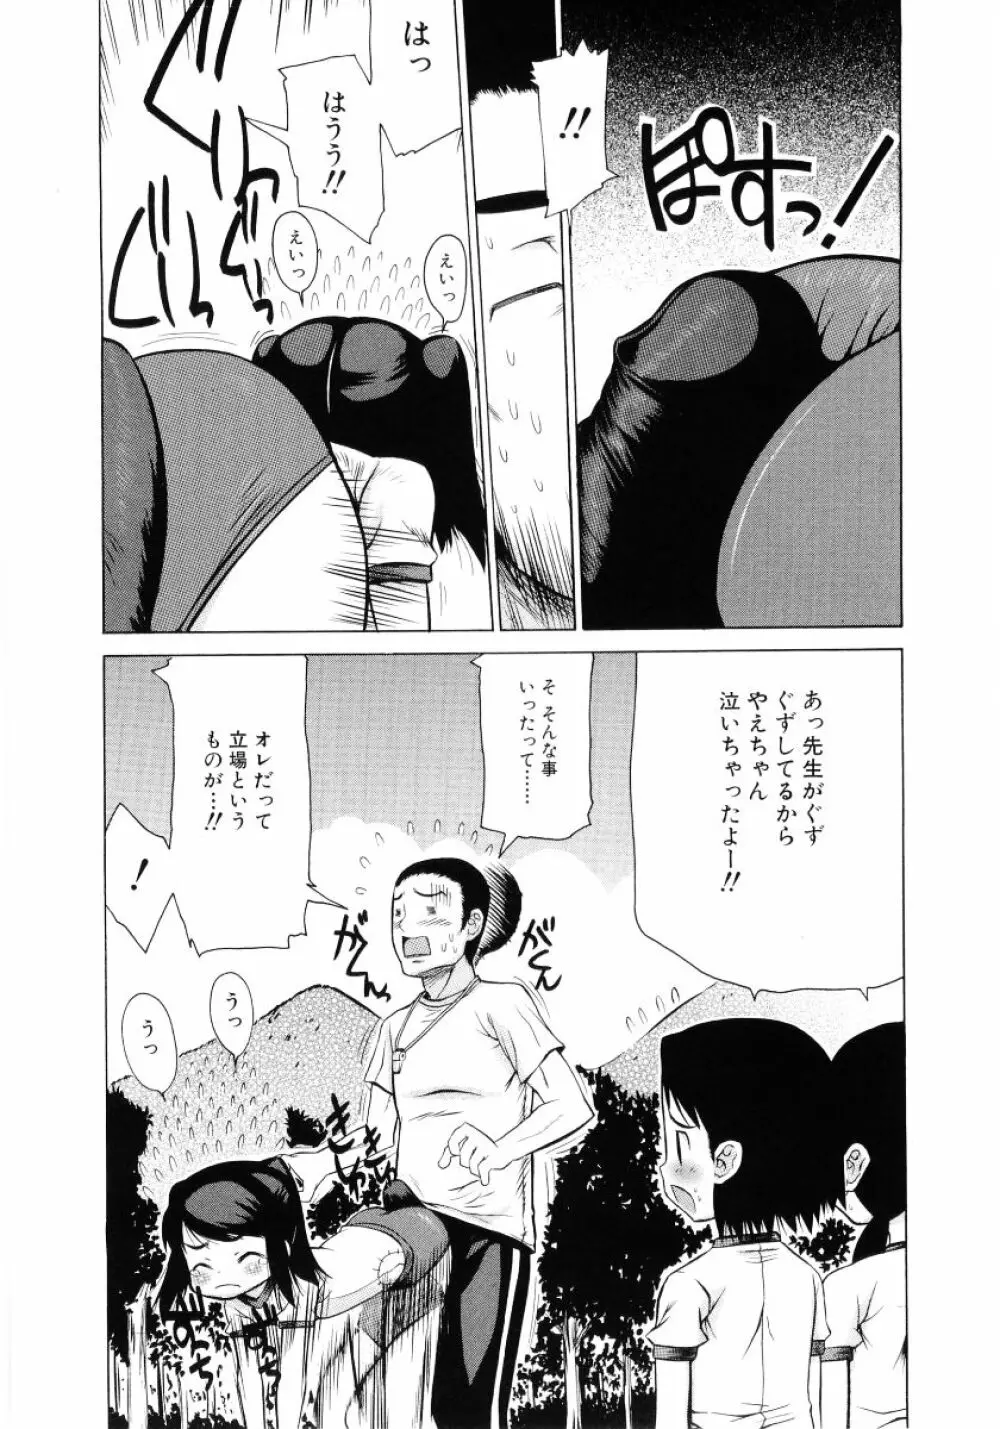 ロリ魂 Vol 4 29ページ